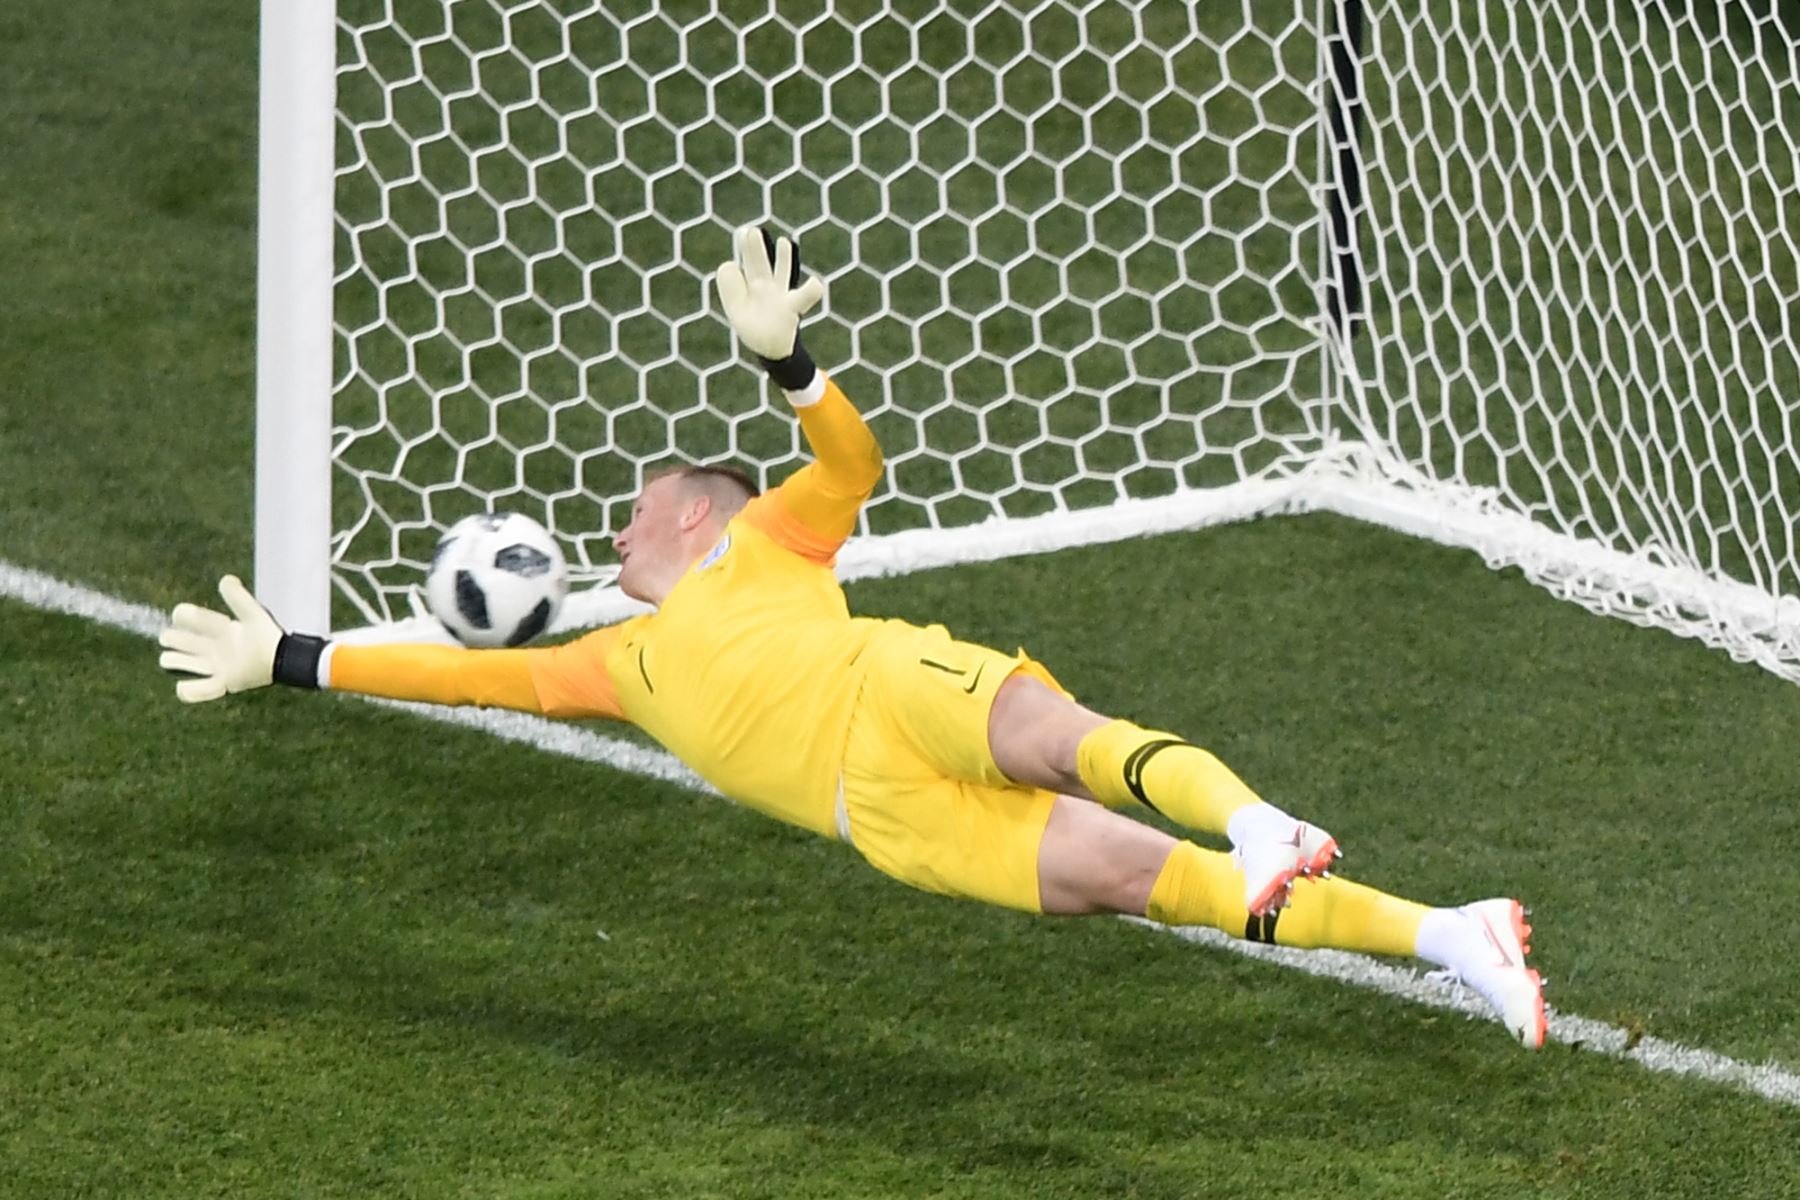 El portero de Inglaterra, Jordan Pickford, no puede detener un lanzamiento de penalti durante el partido de fútbol de la Copa del Mundo Rusia 2018 Grupo G entre Túnez e Inglaterra.AFP